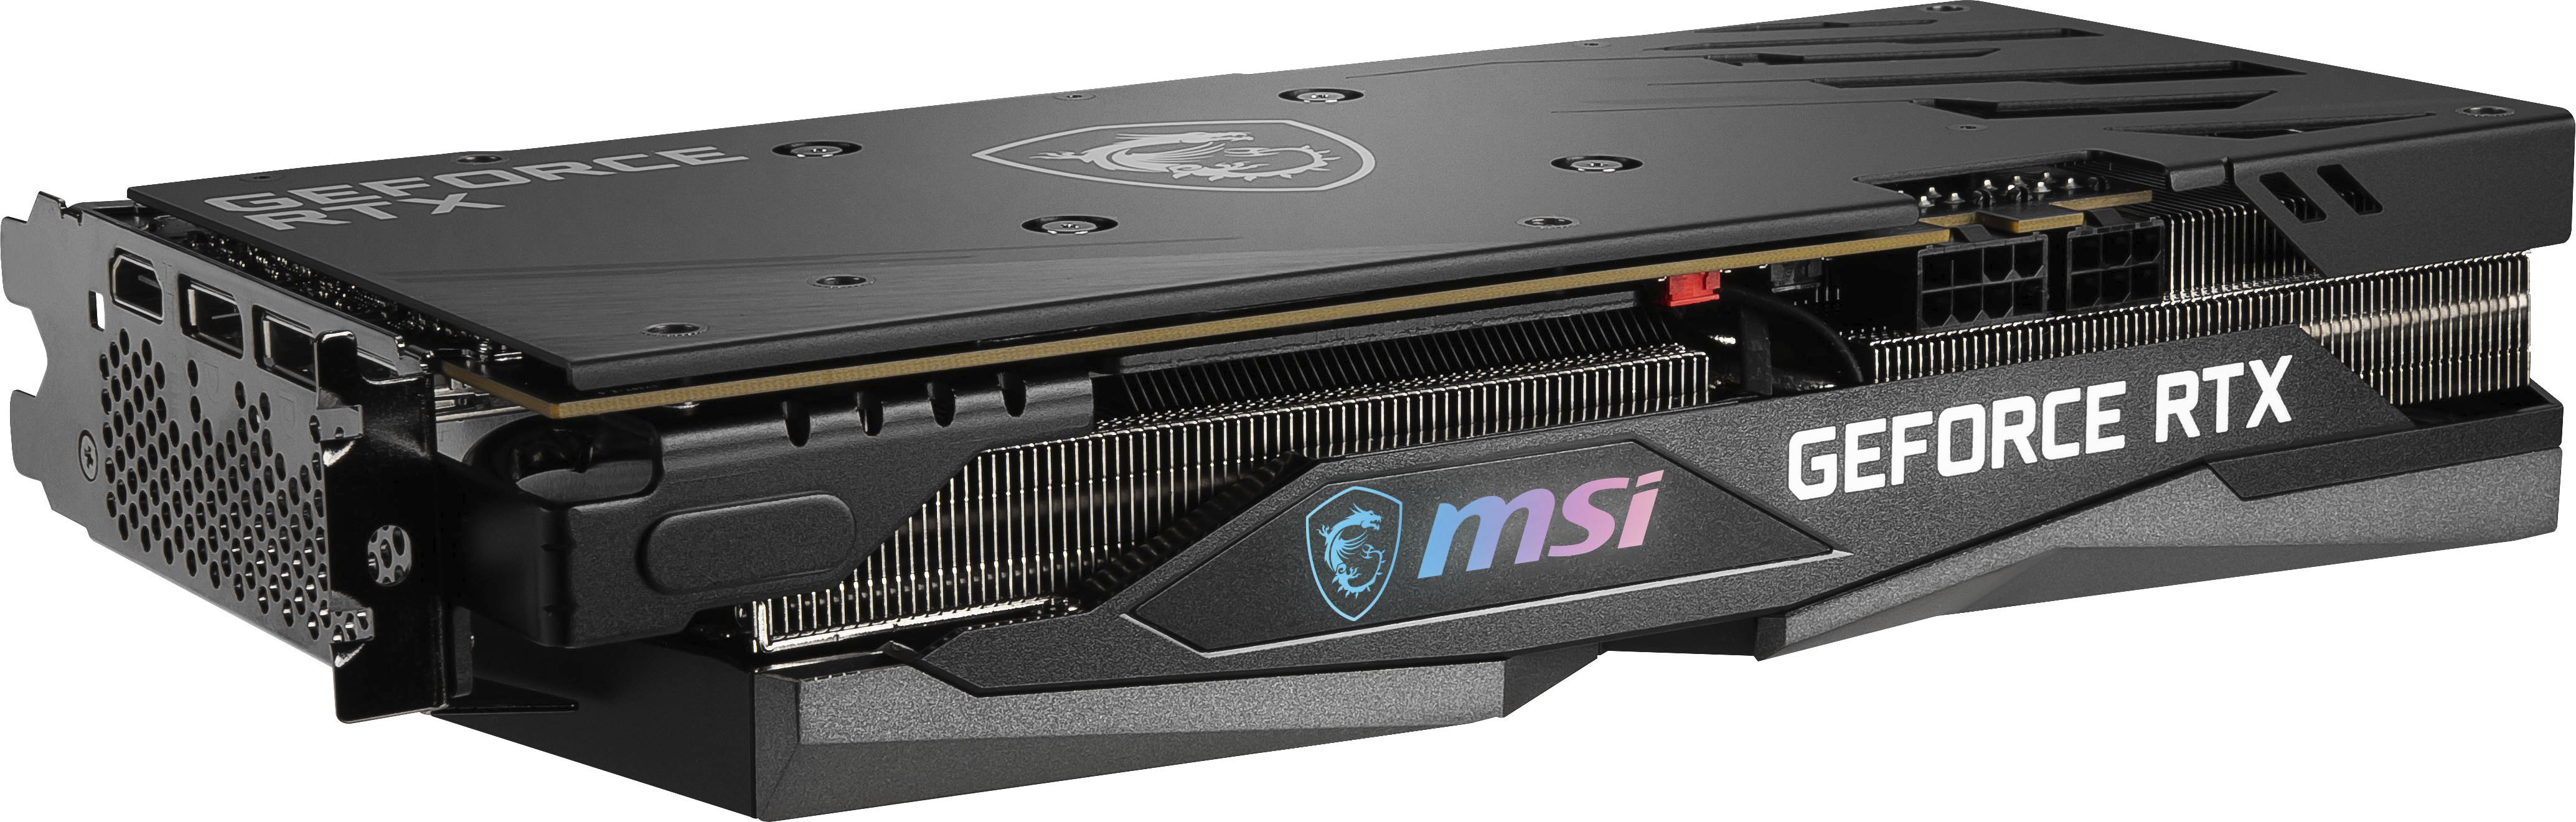 シルバー金具 MSI GeForce RTX 3060 GAMING X 12G グラフィックスボード VD7552 通販 